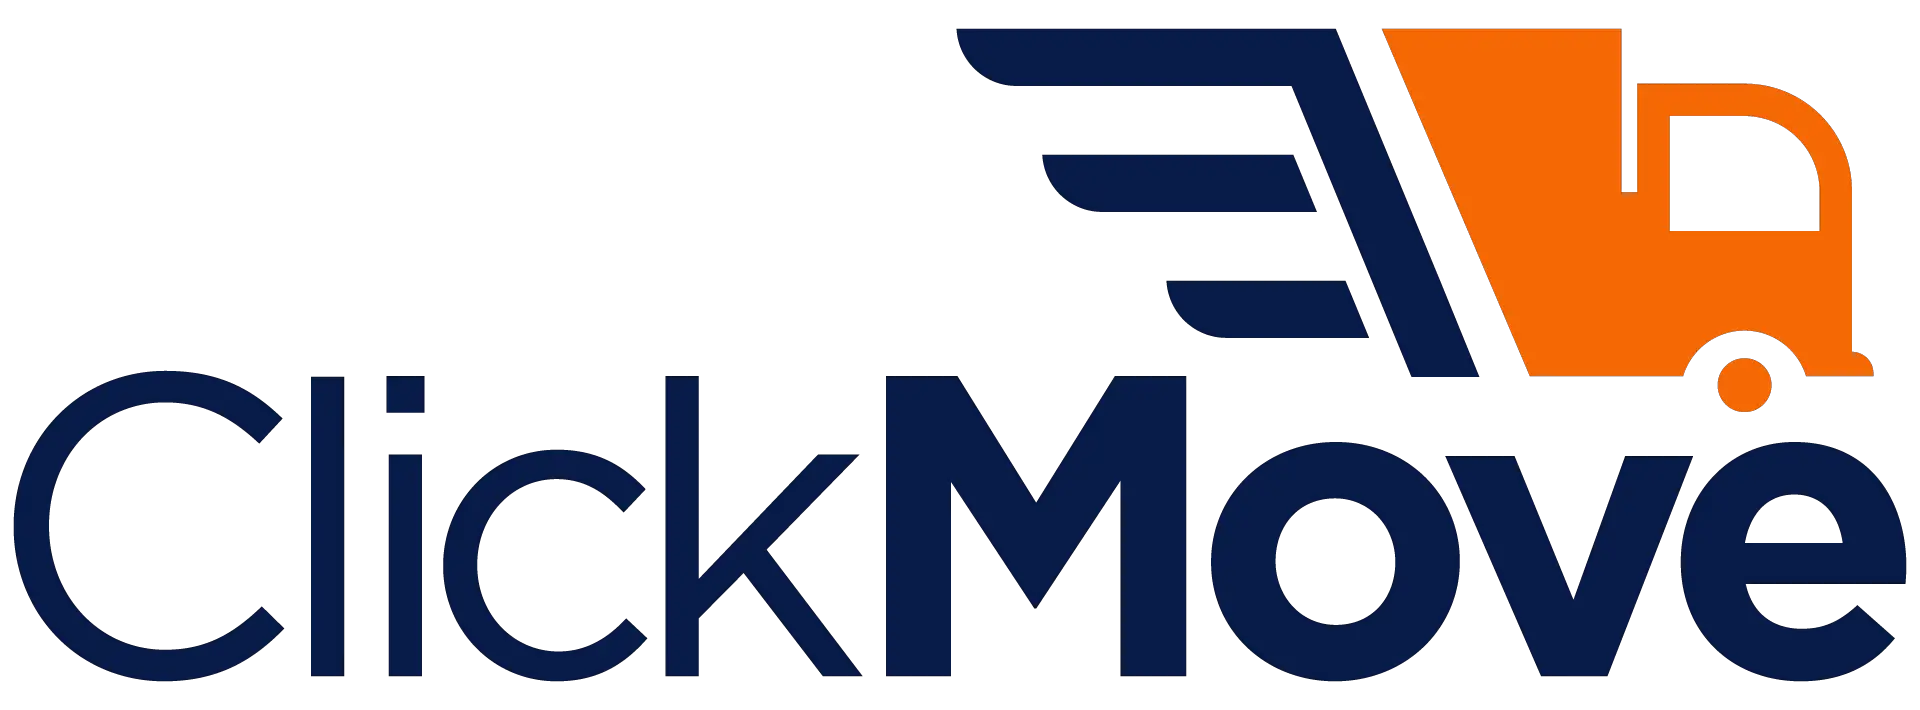 click move logo-f7b46791